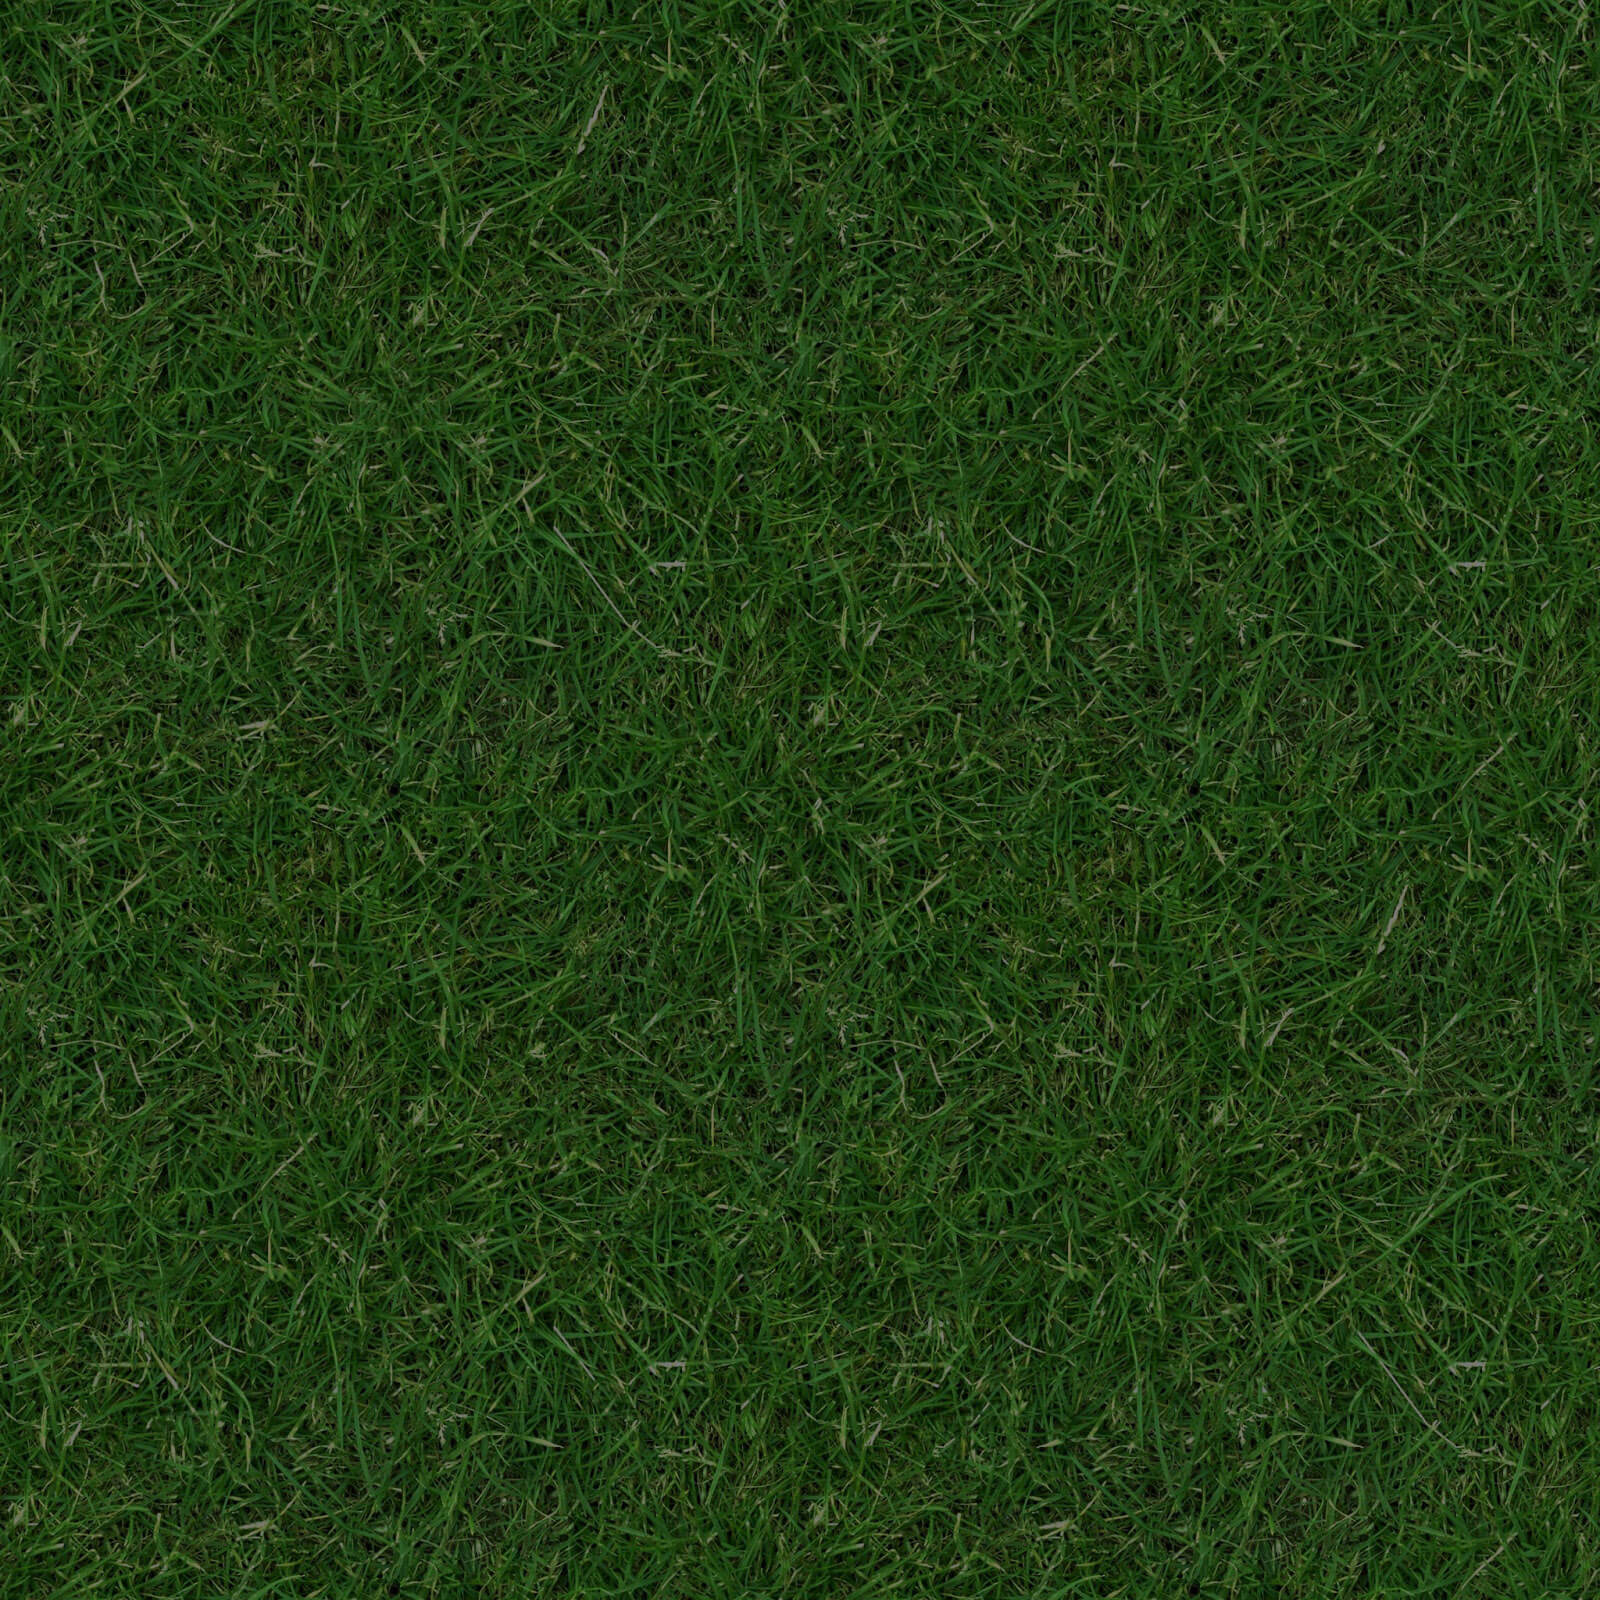 (GRASS-3)-seamless-turf-lawn-green-ground-field-texture2 - Boys & Girls ...